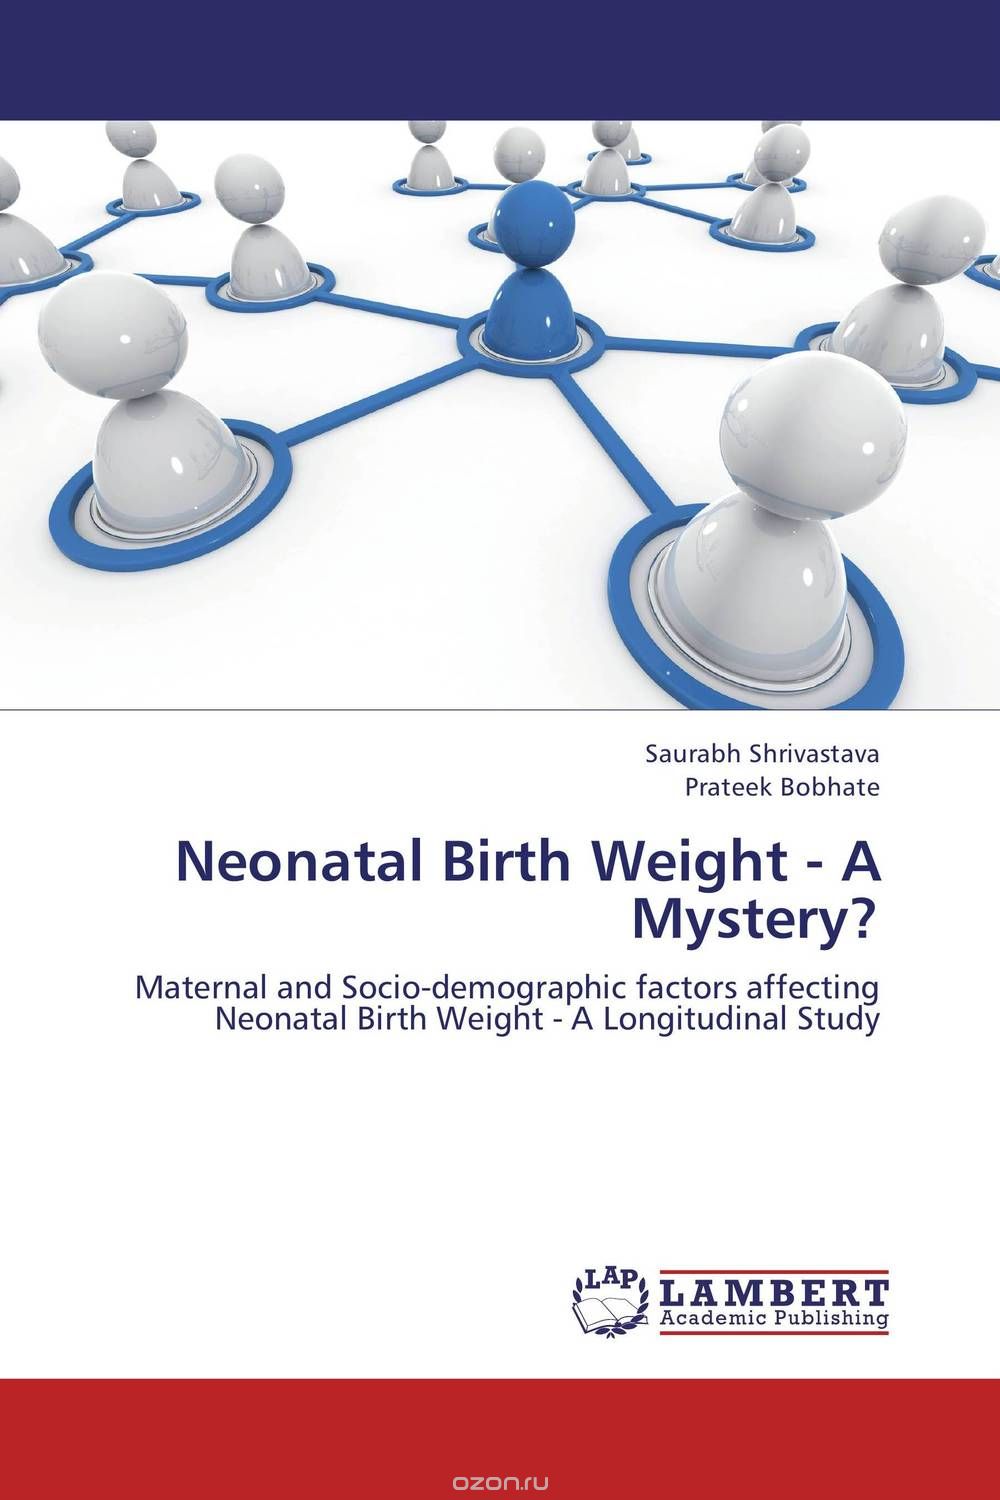 Скачать книгу "Neonatal Birth Weight - A Mystery?"